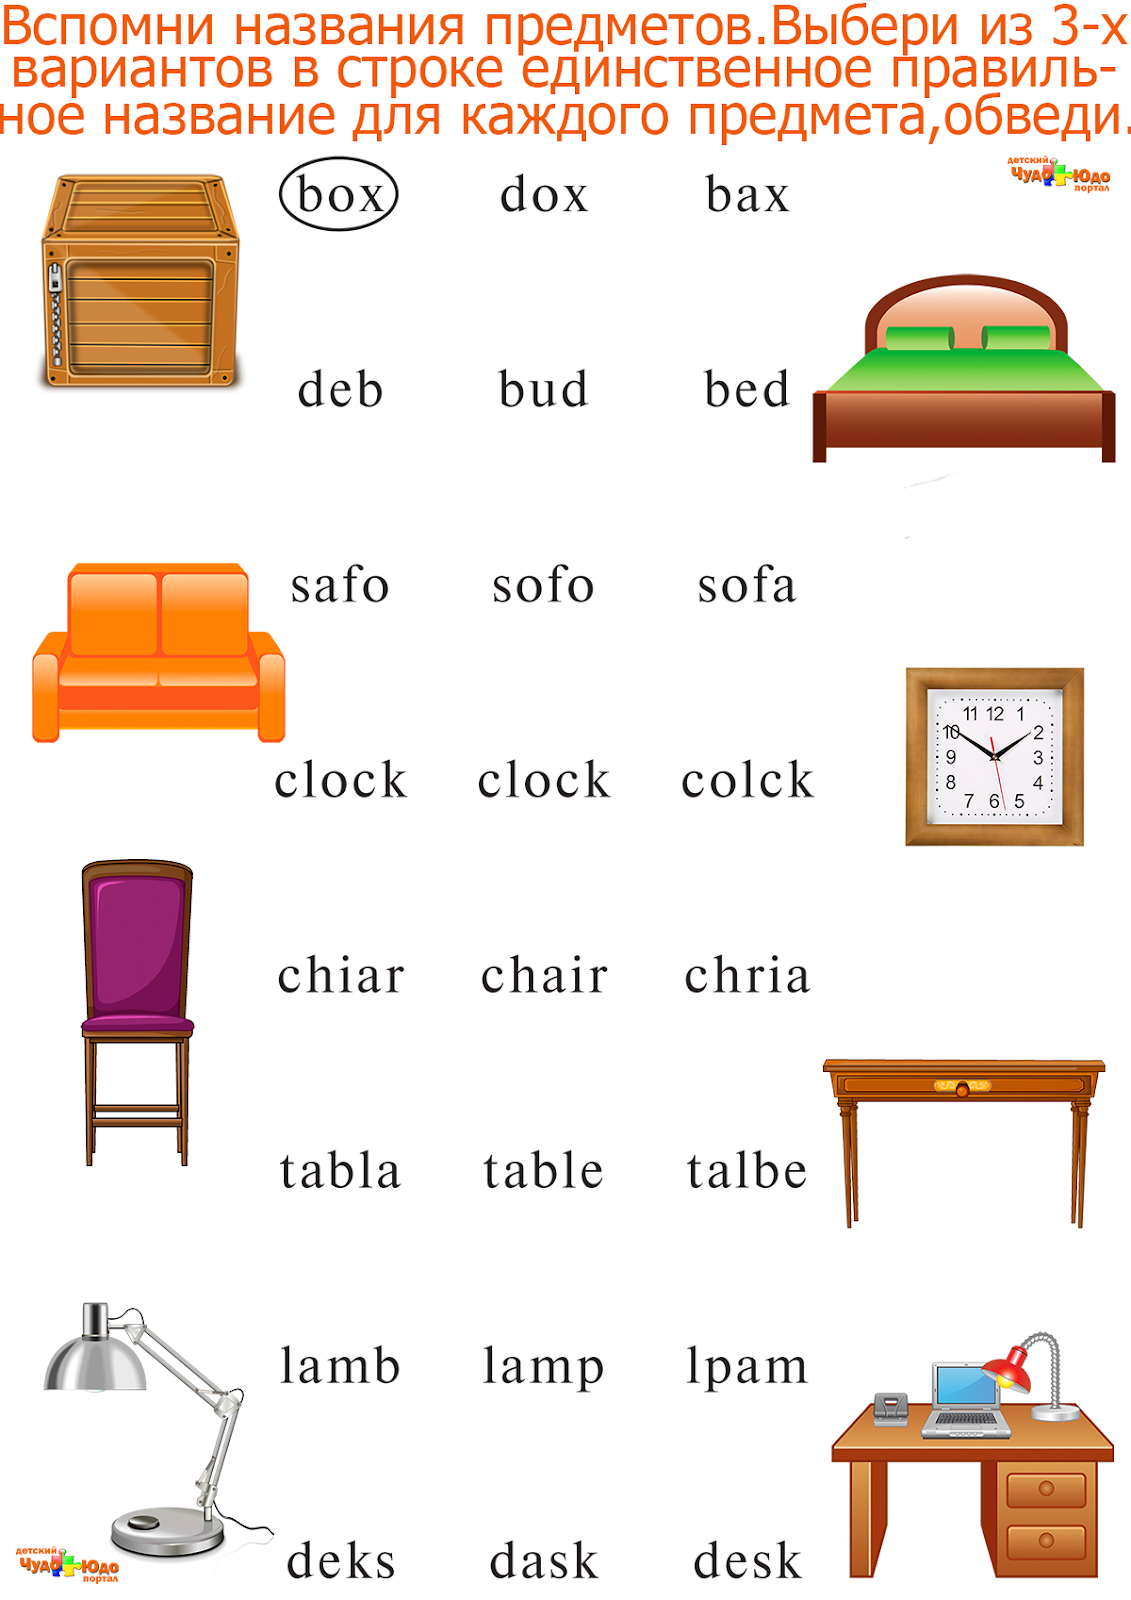 Слова на английском комнаты. Задание на англ яз мебель. Задания для детей англ яз мебель. Мебель на английском для дошкольников задания. Слова на английском языке предметы мебели.